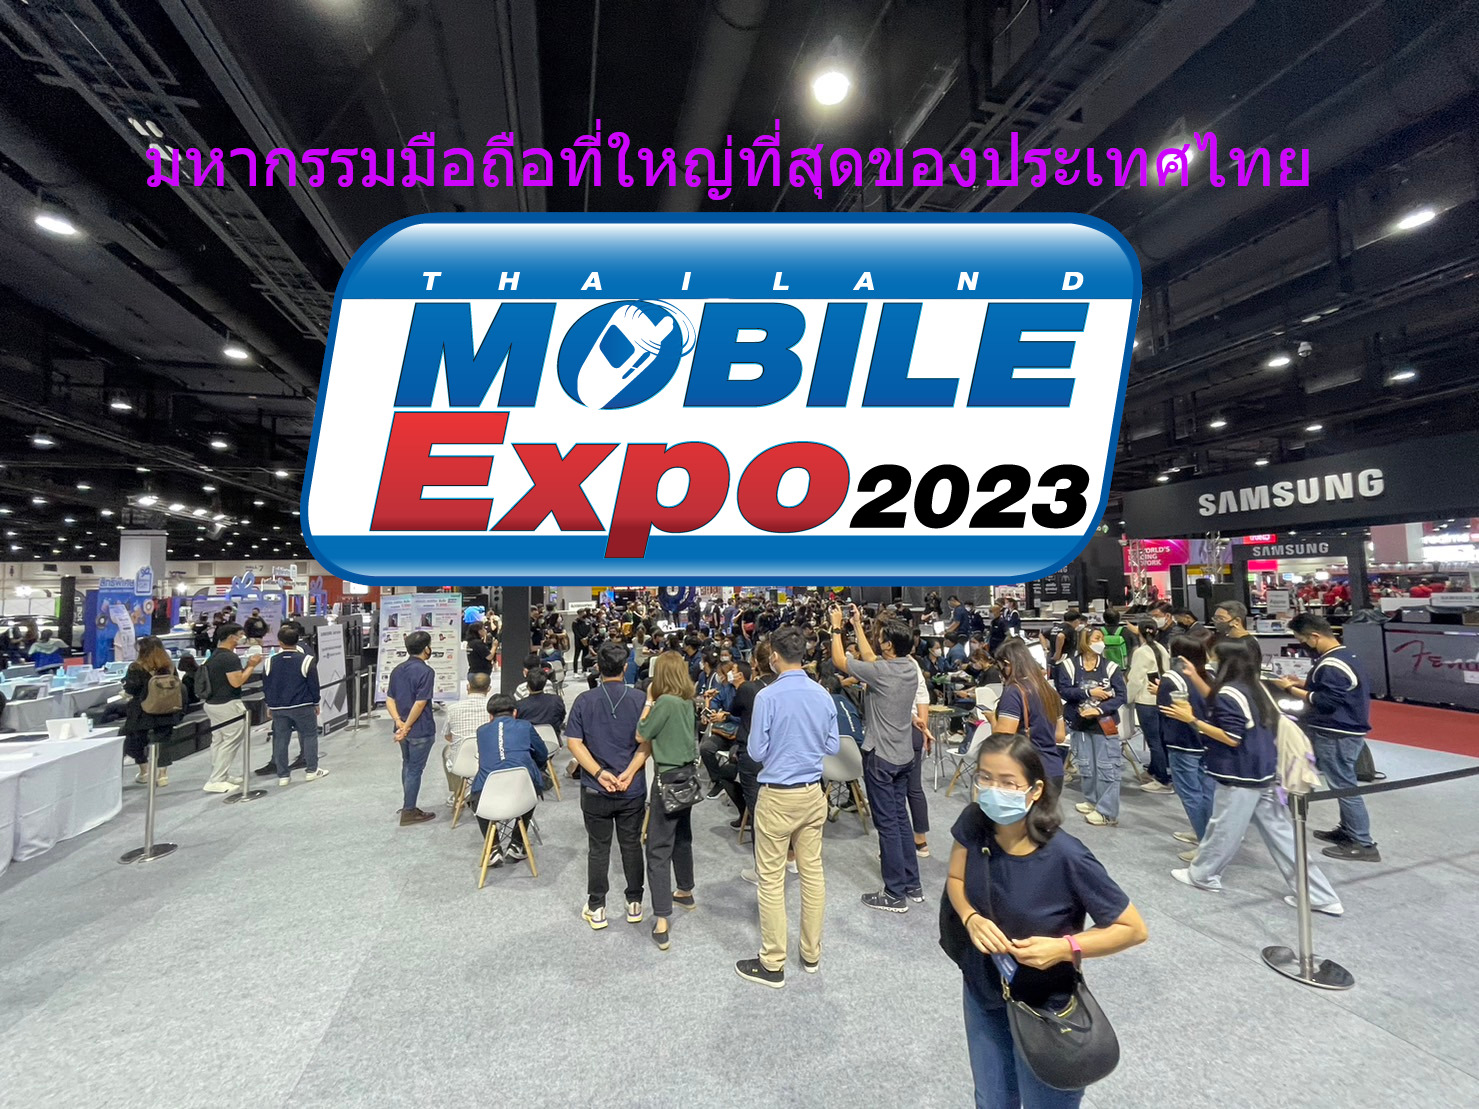 Thailand Mobile Expo 2022 กลับมาแล้วกับงานมือถือ ศูนย์ฯ สิริกิติ์ จัดวันที่ 6-9 ตุลาคม 2565